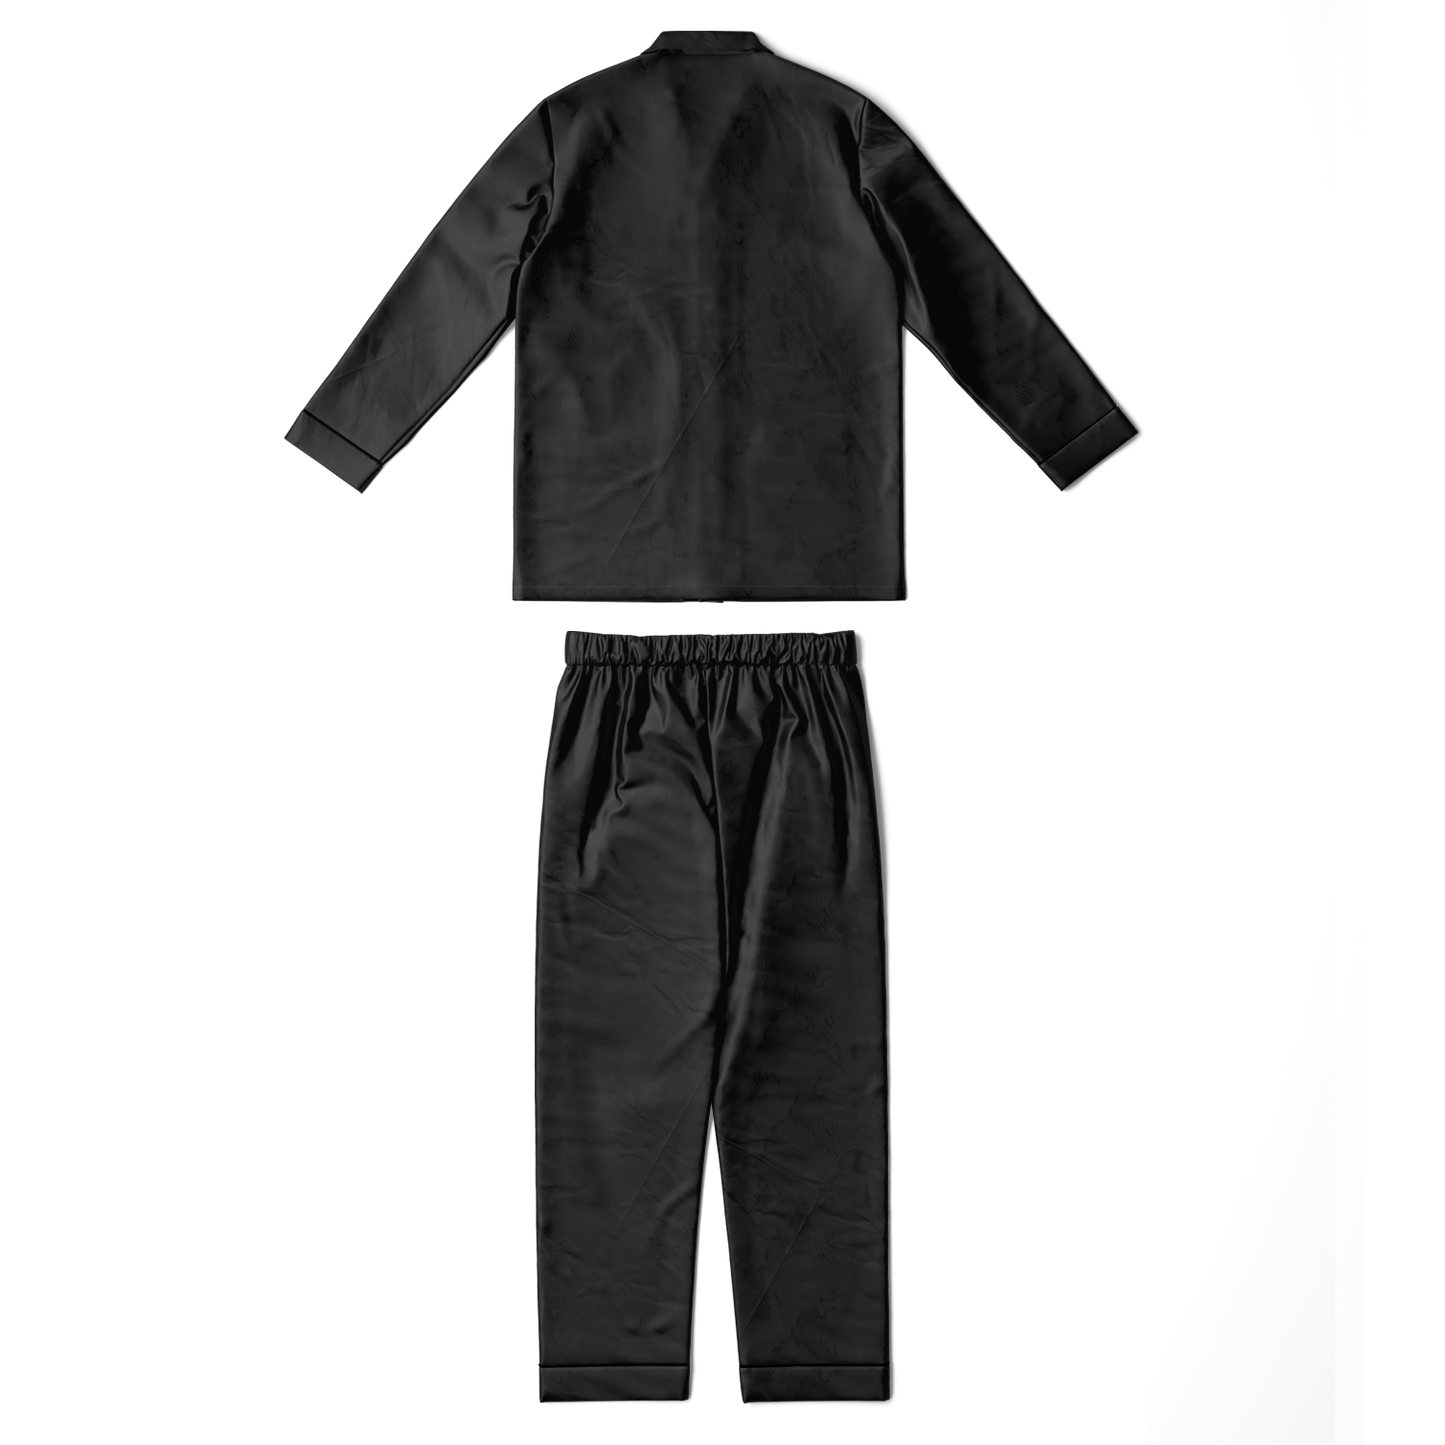 WRWC Signature Black ~ 2022 Satin pajamas